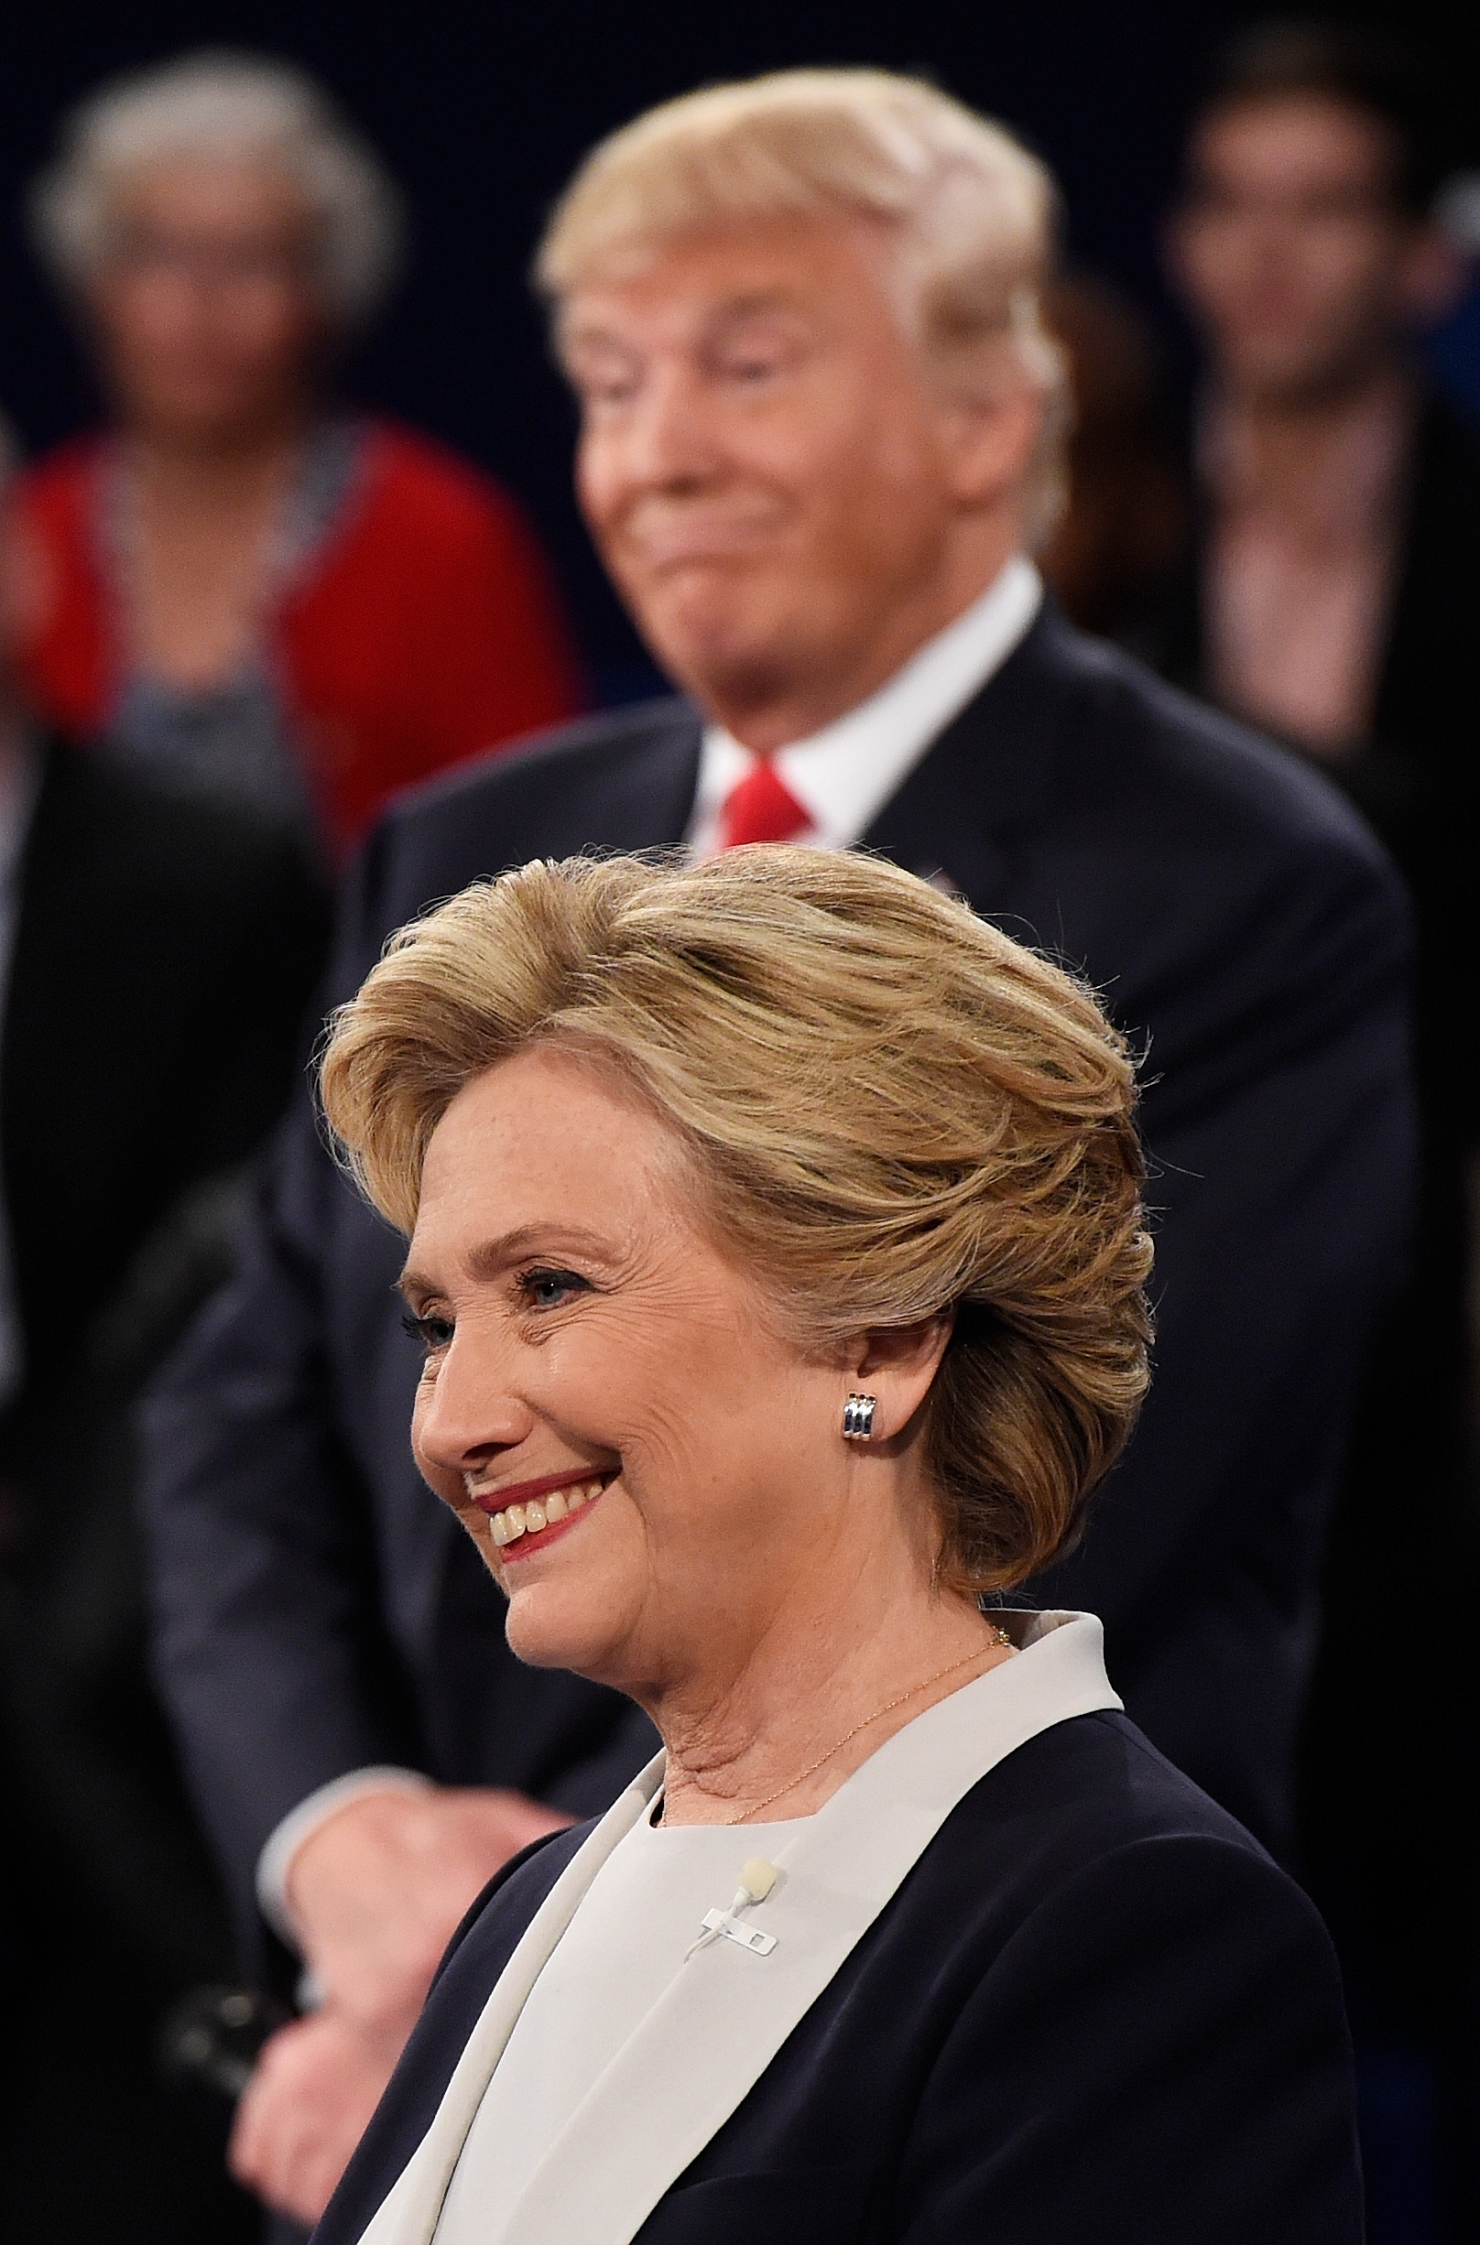 Cele mai bune imagini ale celei de-a doua dezbateri Clinton – Trump